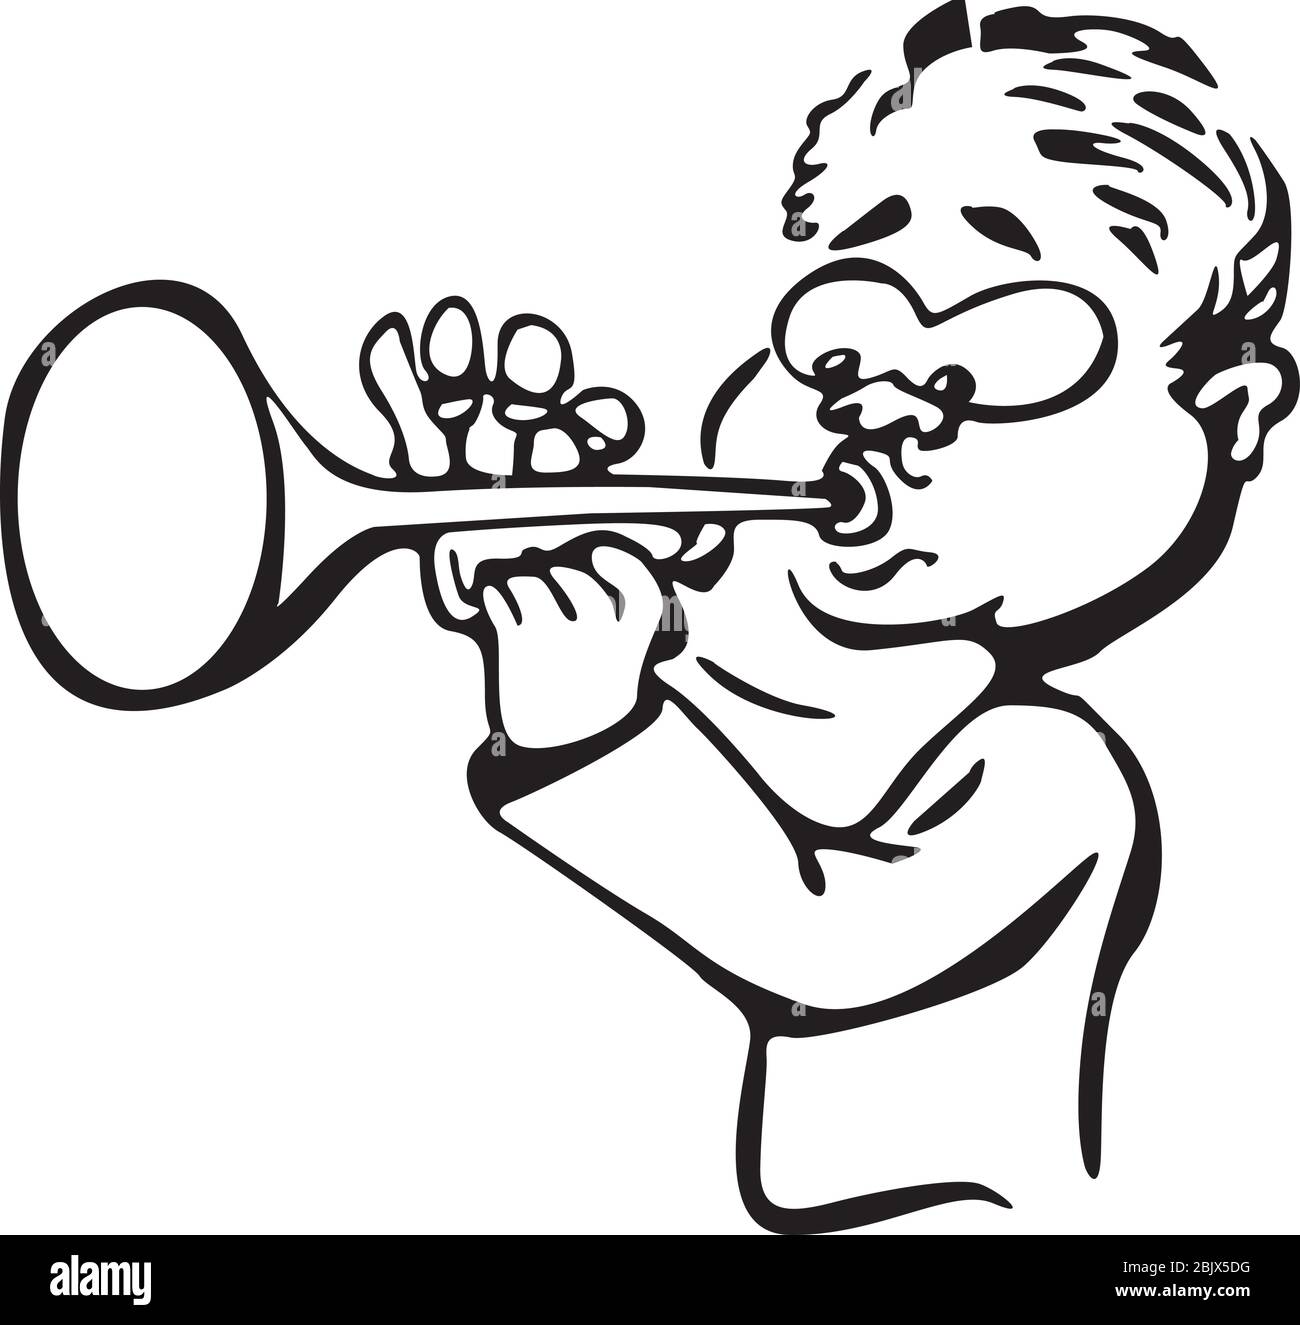 Disegno Bambino con la trombetta colorato da Utente non registrato il 11 di  Novembre del 2011